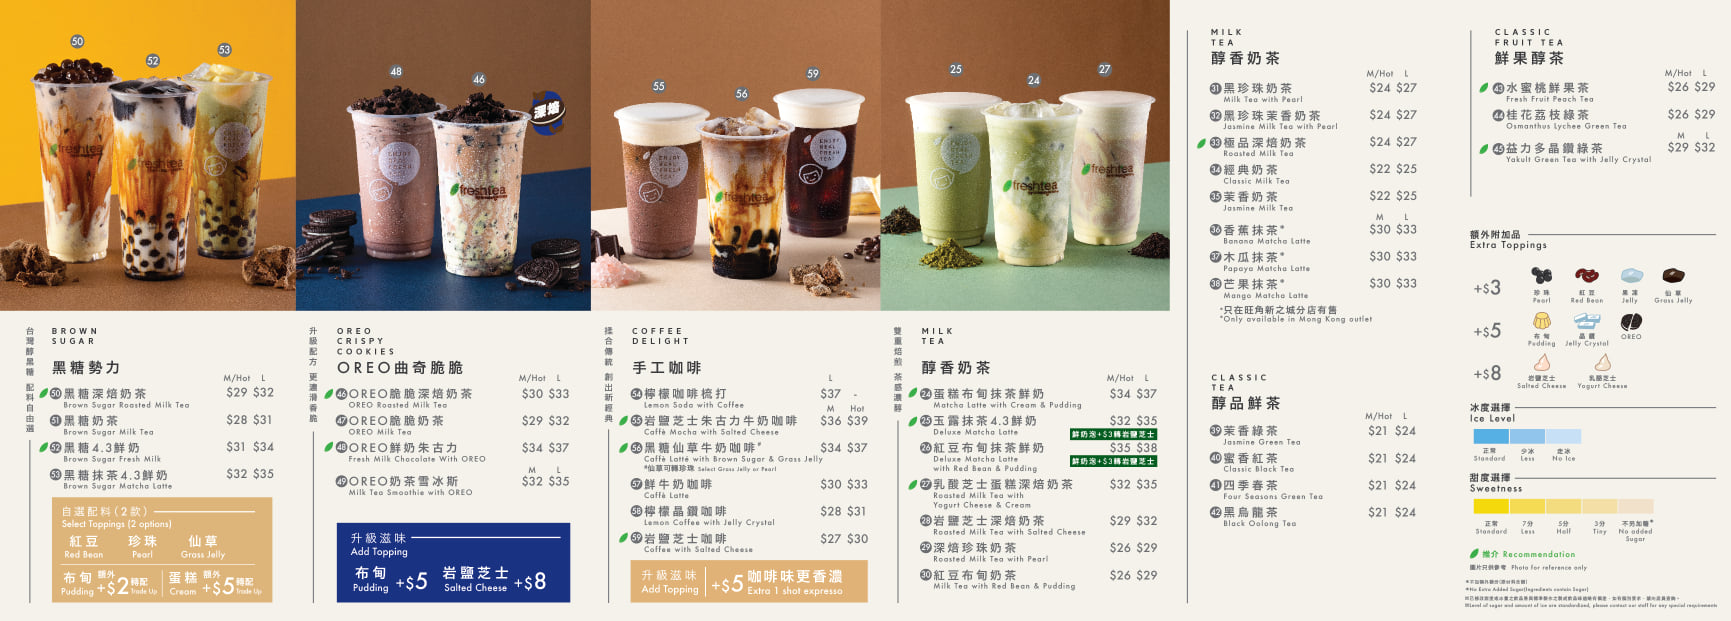 快樂檸檬 happylemon的特許經營香港區加盟店項目8